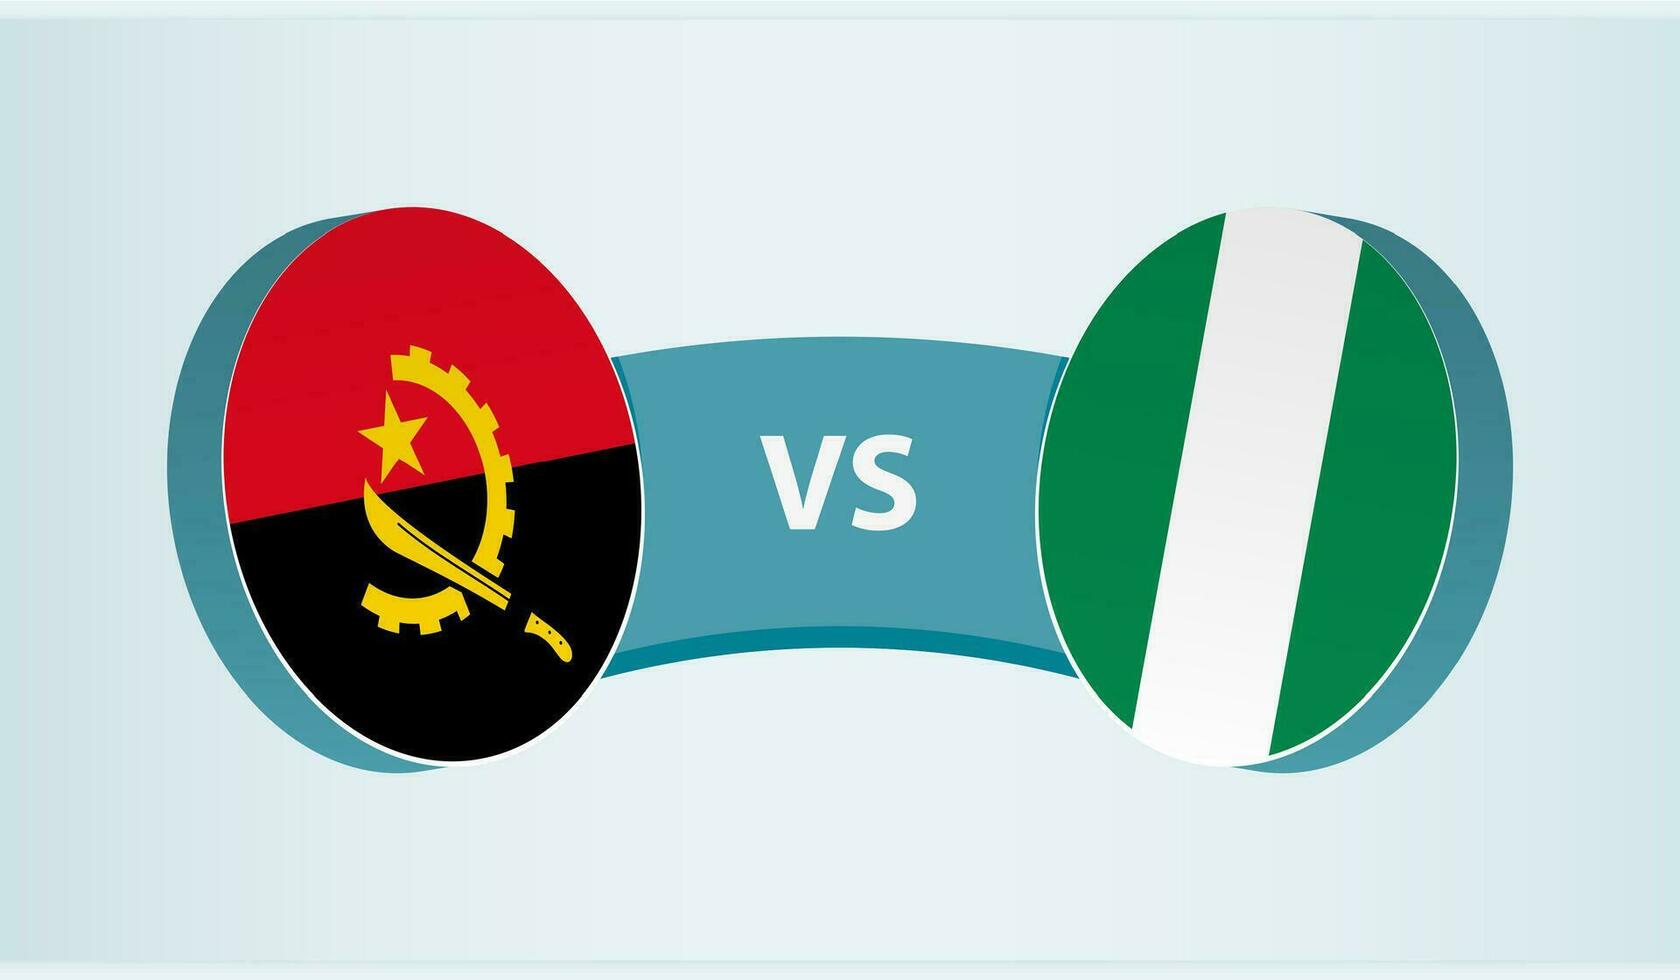 angola versus Nigeria, equipo Deportes competencia concepto. vector